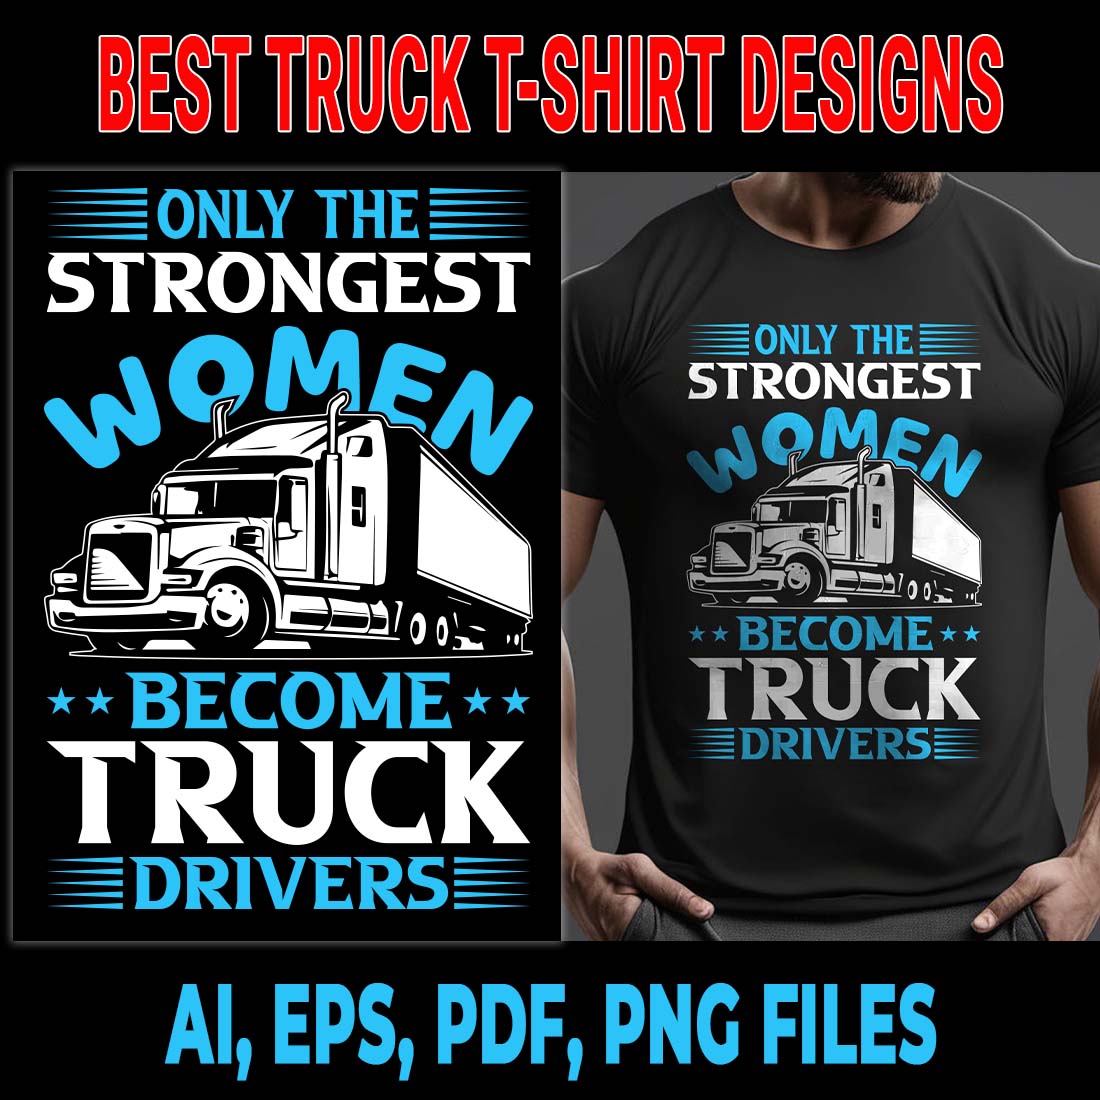 Truck T-shirt Design | Best Truck T-shirt | T-Shirt Design cover image.